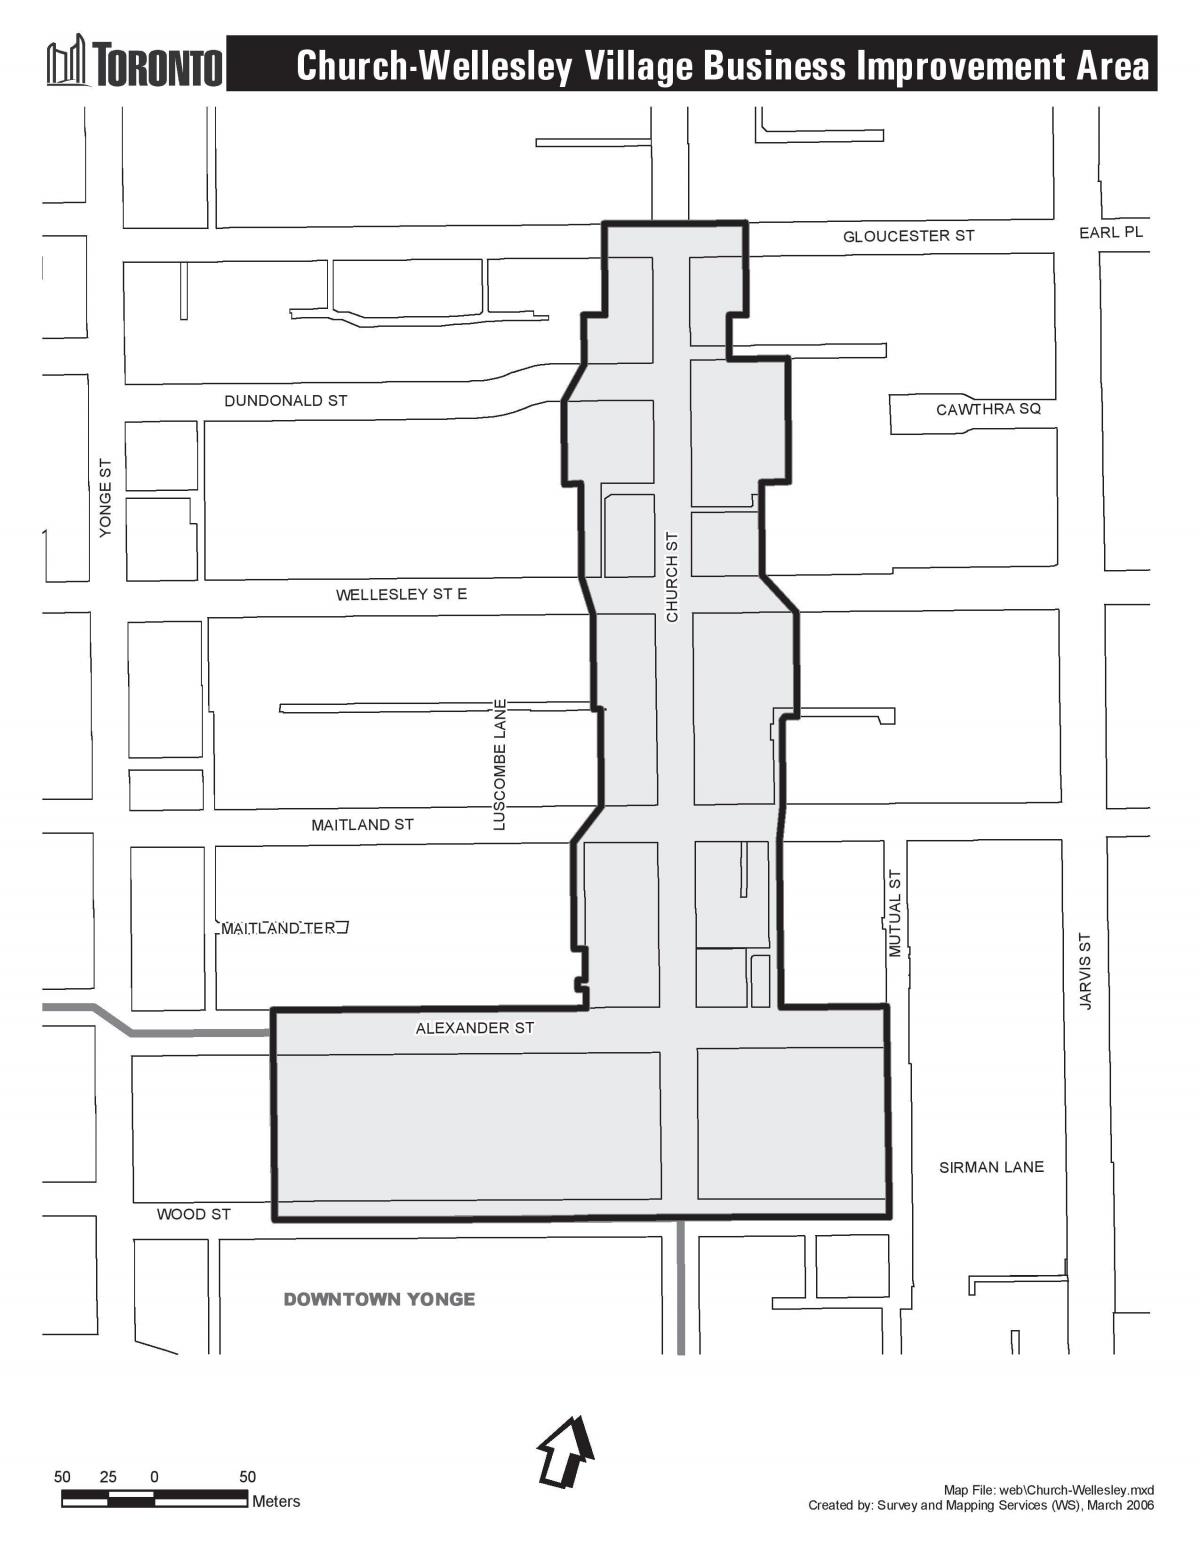 Kilise haritası-Wellesley Village iş Geliştirme Alanında Toronto